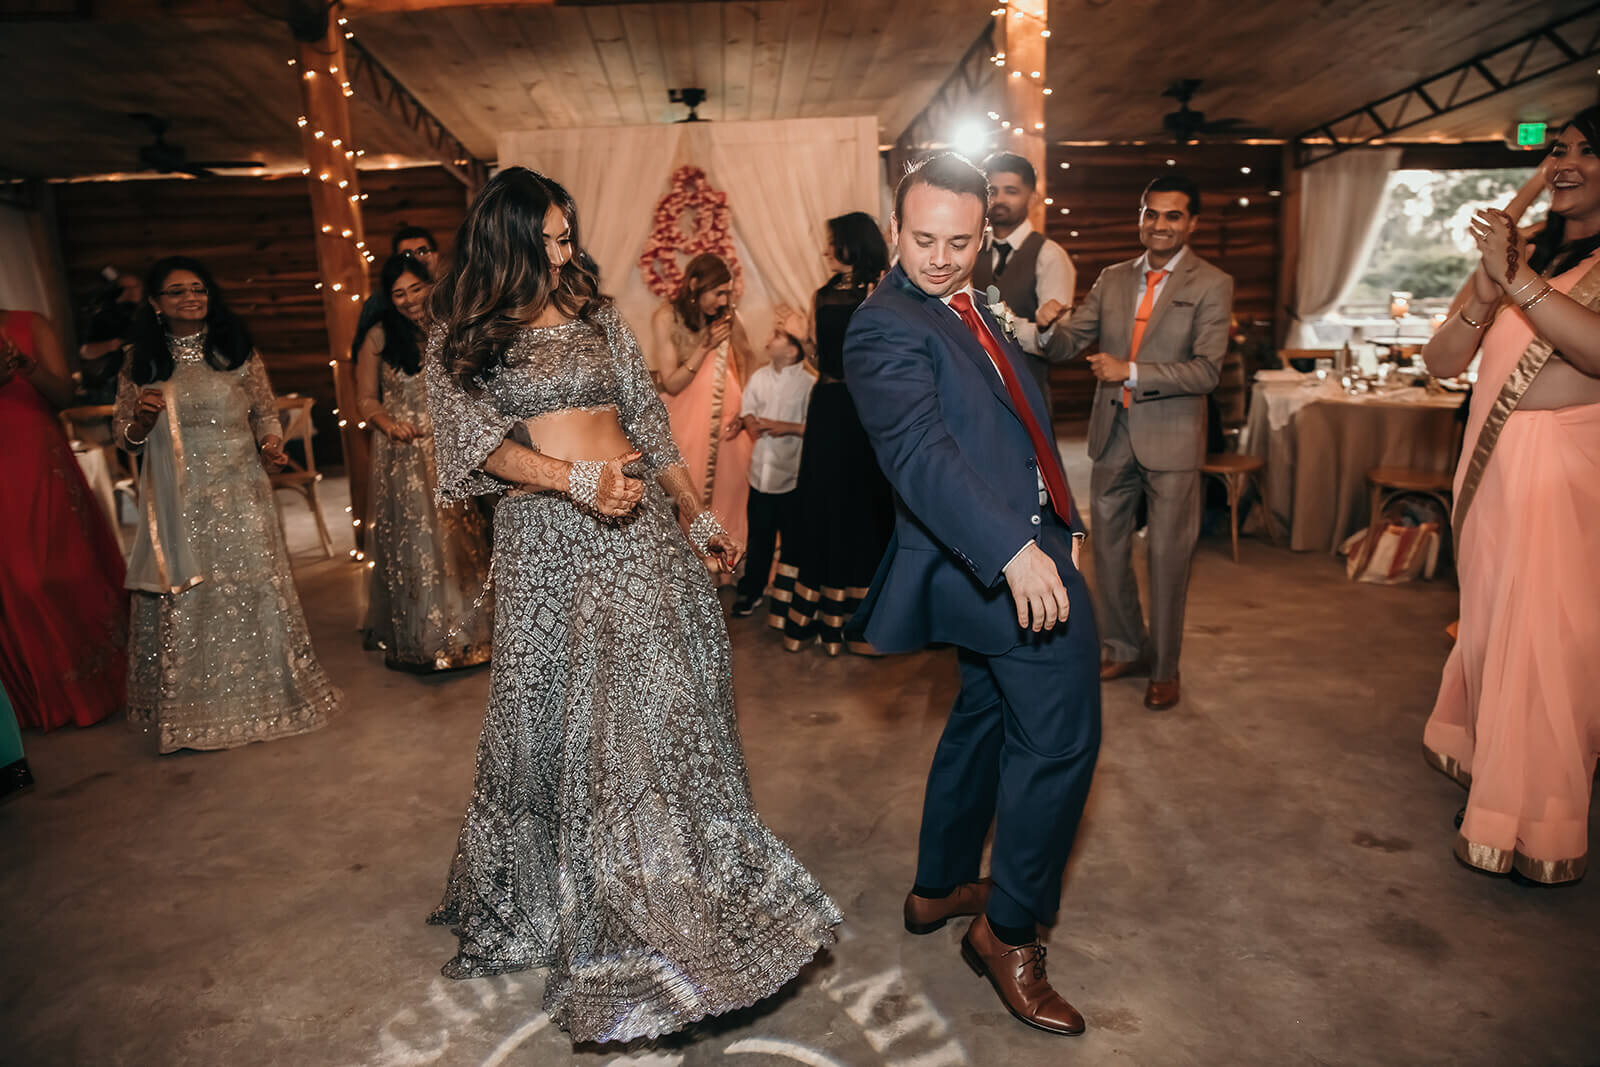  Bride and groom break it down on the dance floor 